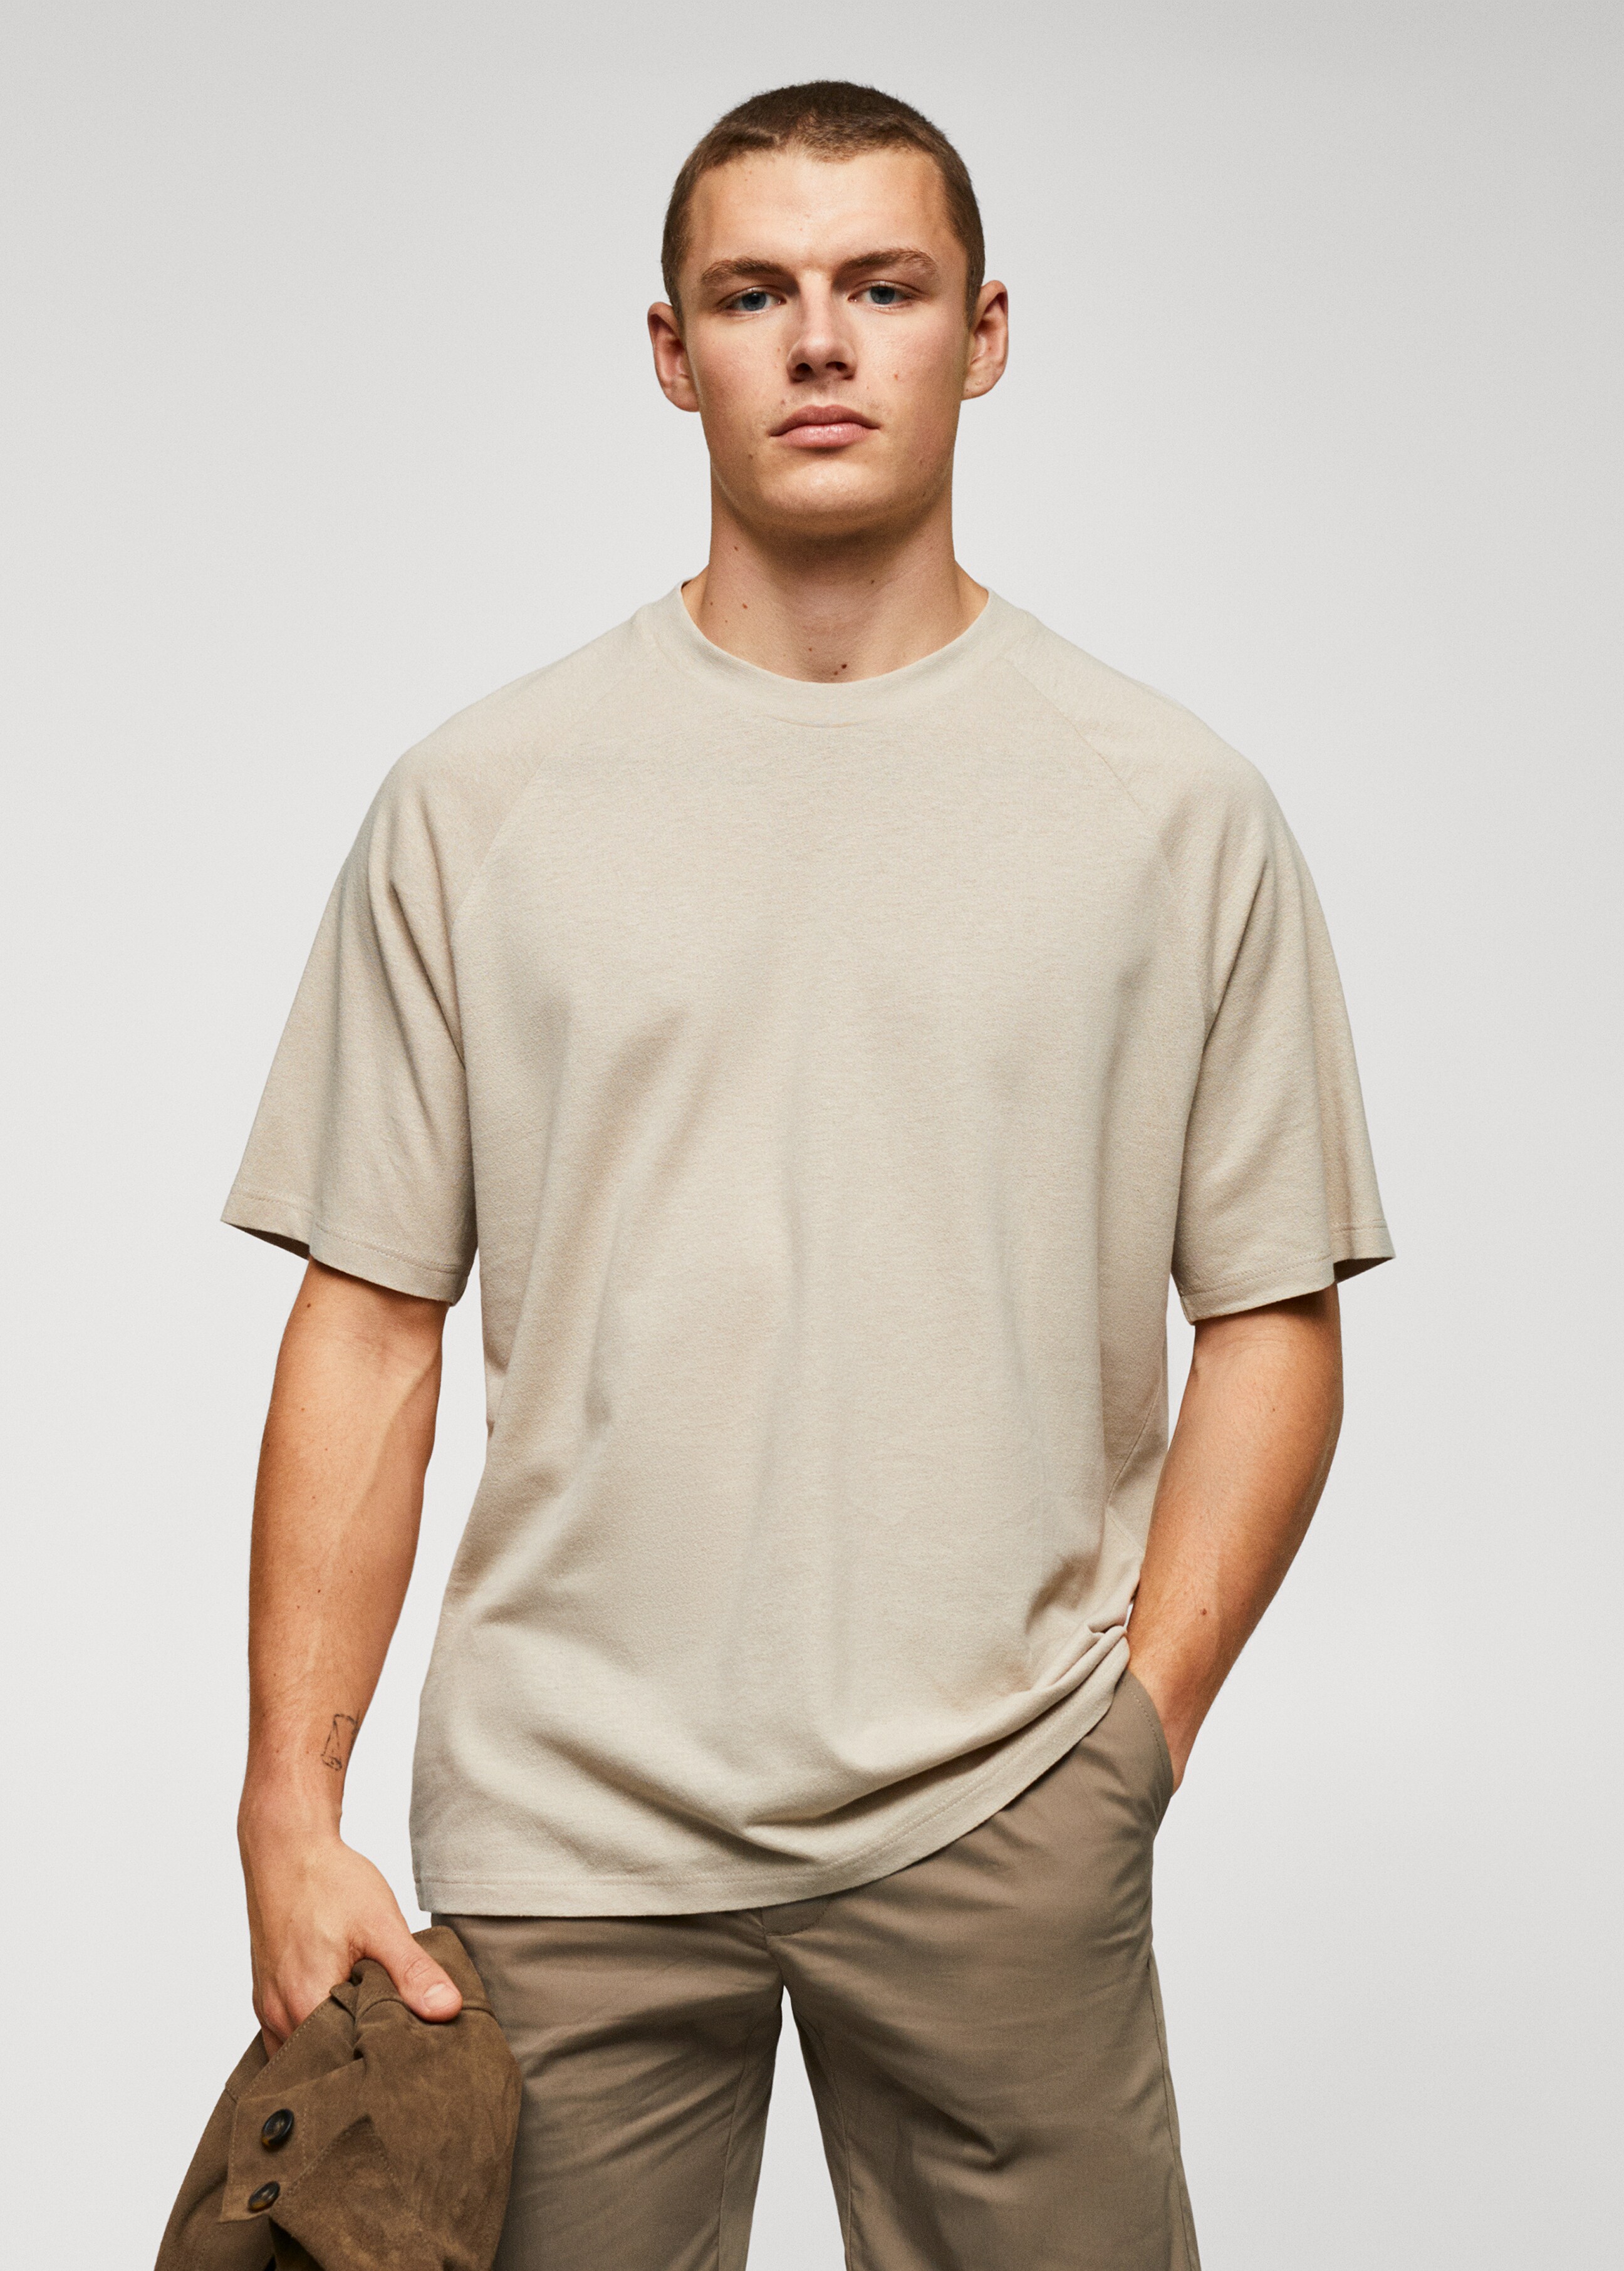 Textured cotton-linen t-shirt - Medium plane